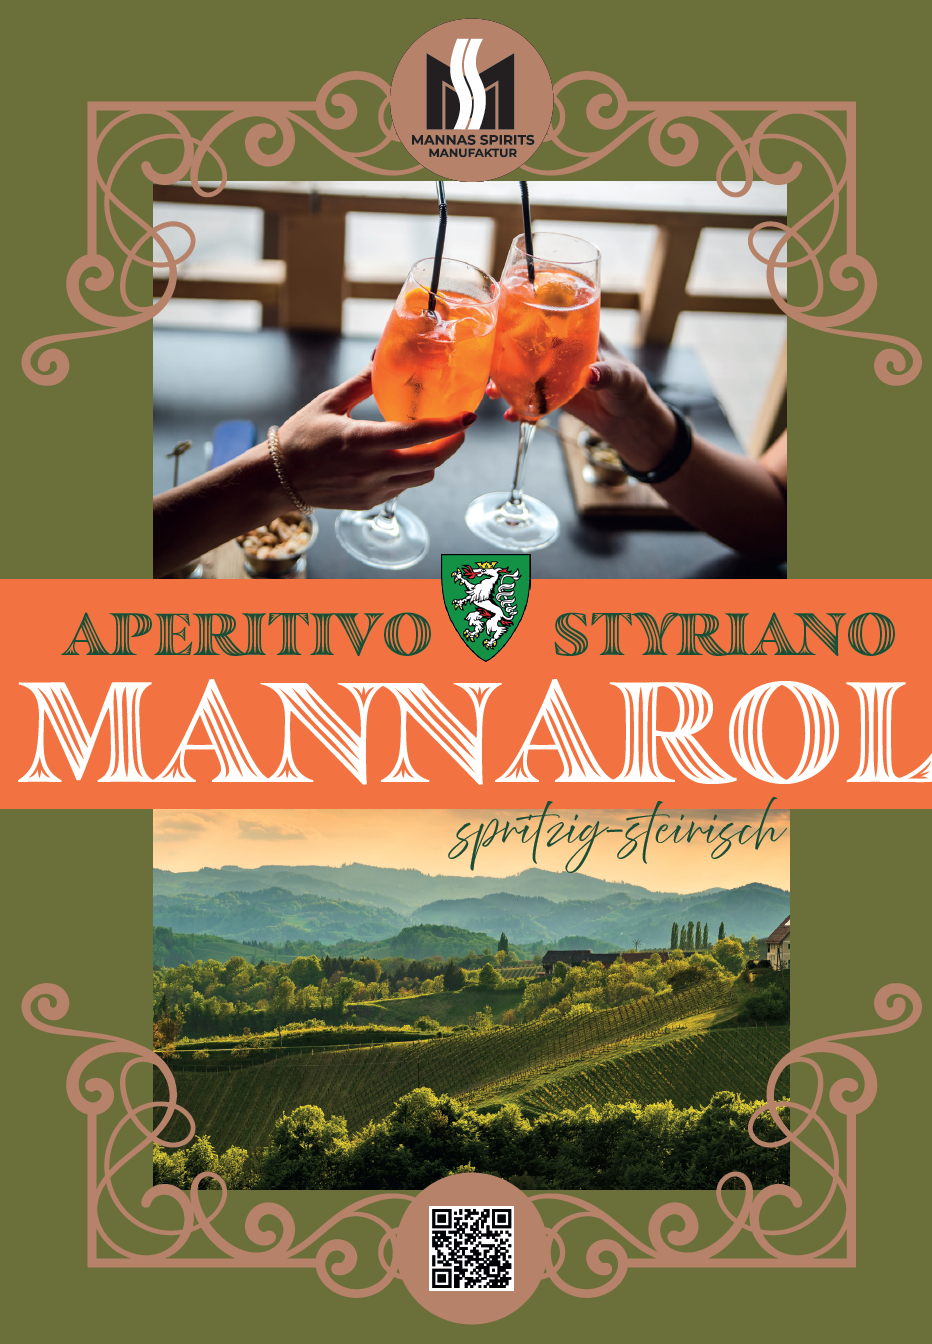 "Mannarol Aperitivo Styriano-Der perfekte Aperitivo Spritzig, Steirisch „